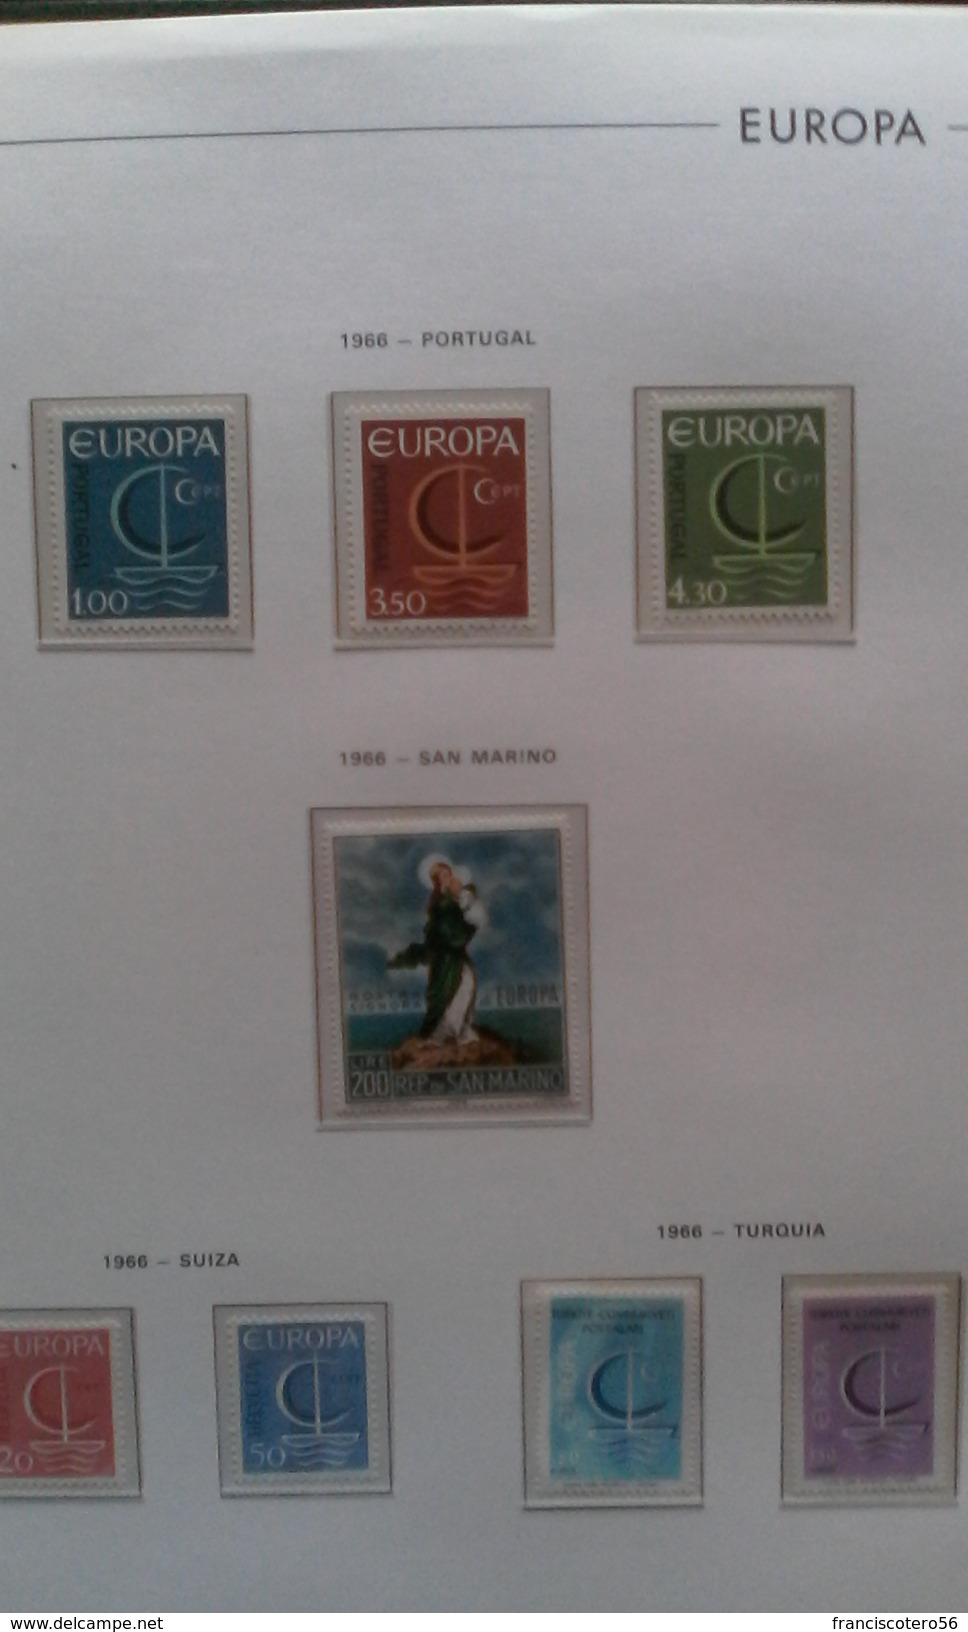 Tema: ( Europa-C.E.P.T. ). Coleccion, Completa de Lujo, desde el Año: 1956/2000.Montada en 6.- Albumes semilujos.